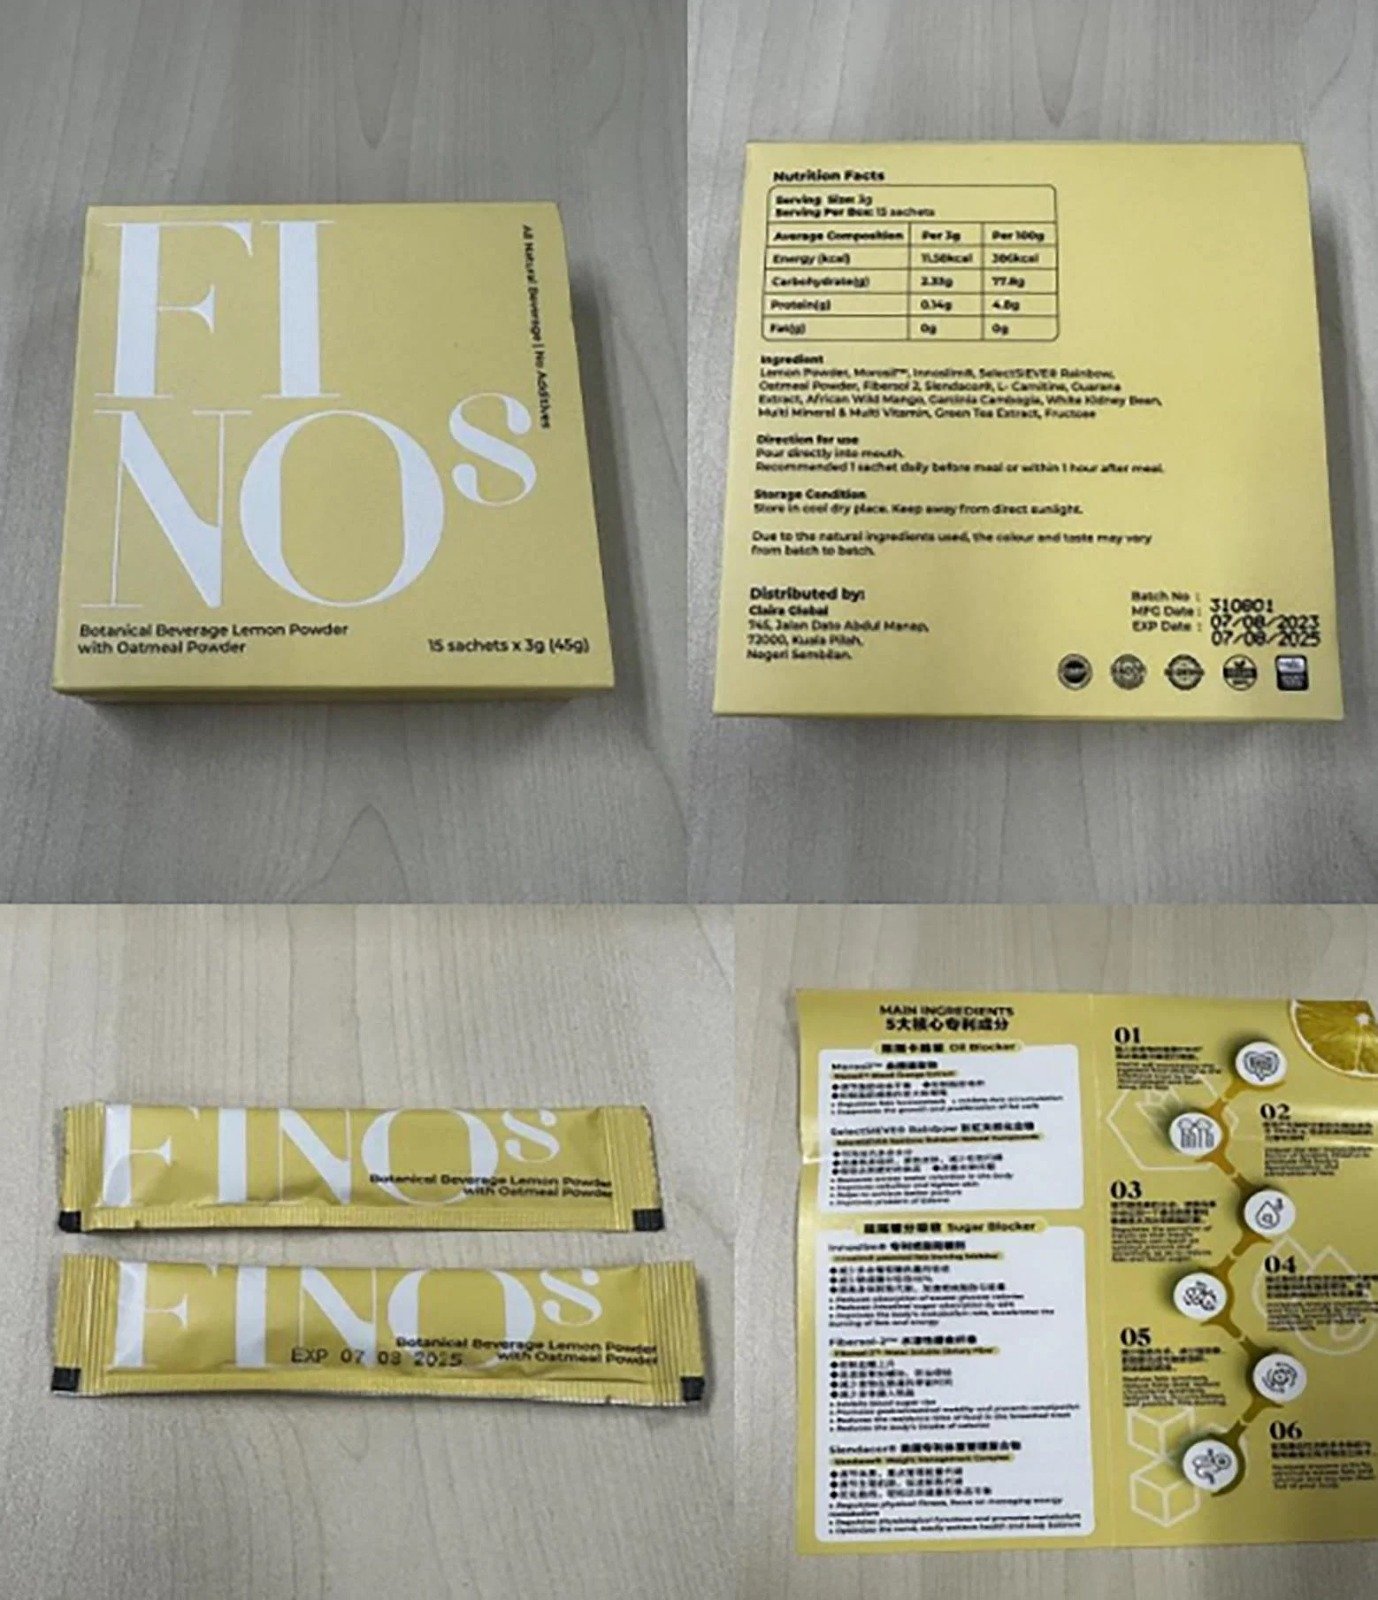 瘦身药“FINOS”含减肥药“奥利司他”，是药局专卖药品，应在医师或药师的督导下使用。